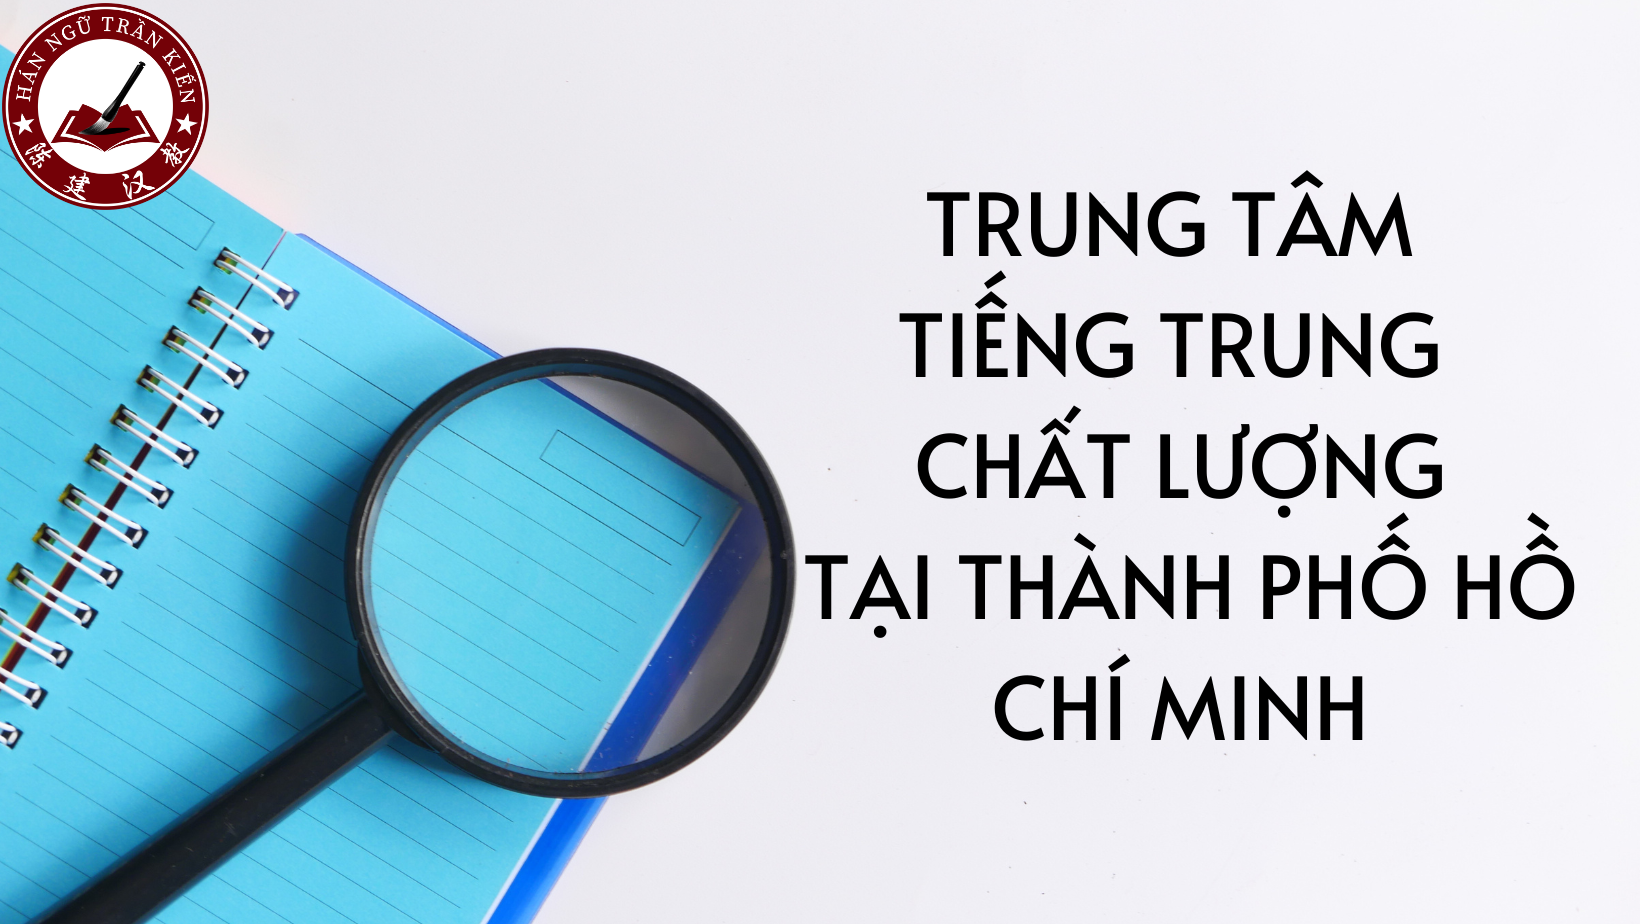 TRUNG TAM TIENGS TRUNG TAI THANH PHO HO CHI MINH